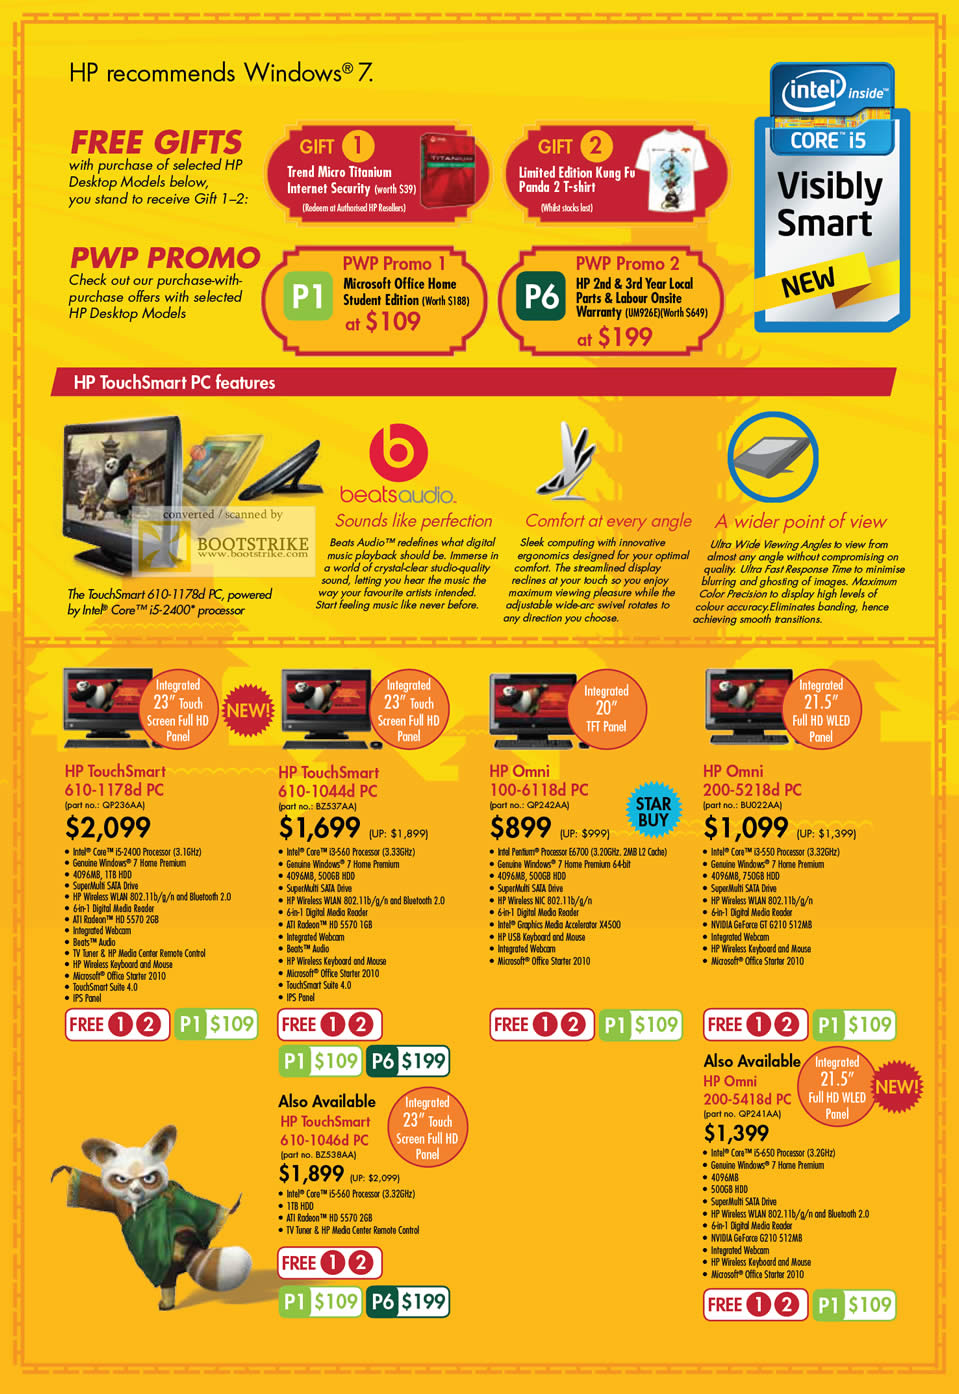 PC Show 2011 price list image brochure of HP Desktop PC TouchSmart 610-1178d 610-1044d 100-6118d 610-1046d Omni 200-5218d 200-5418d